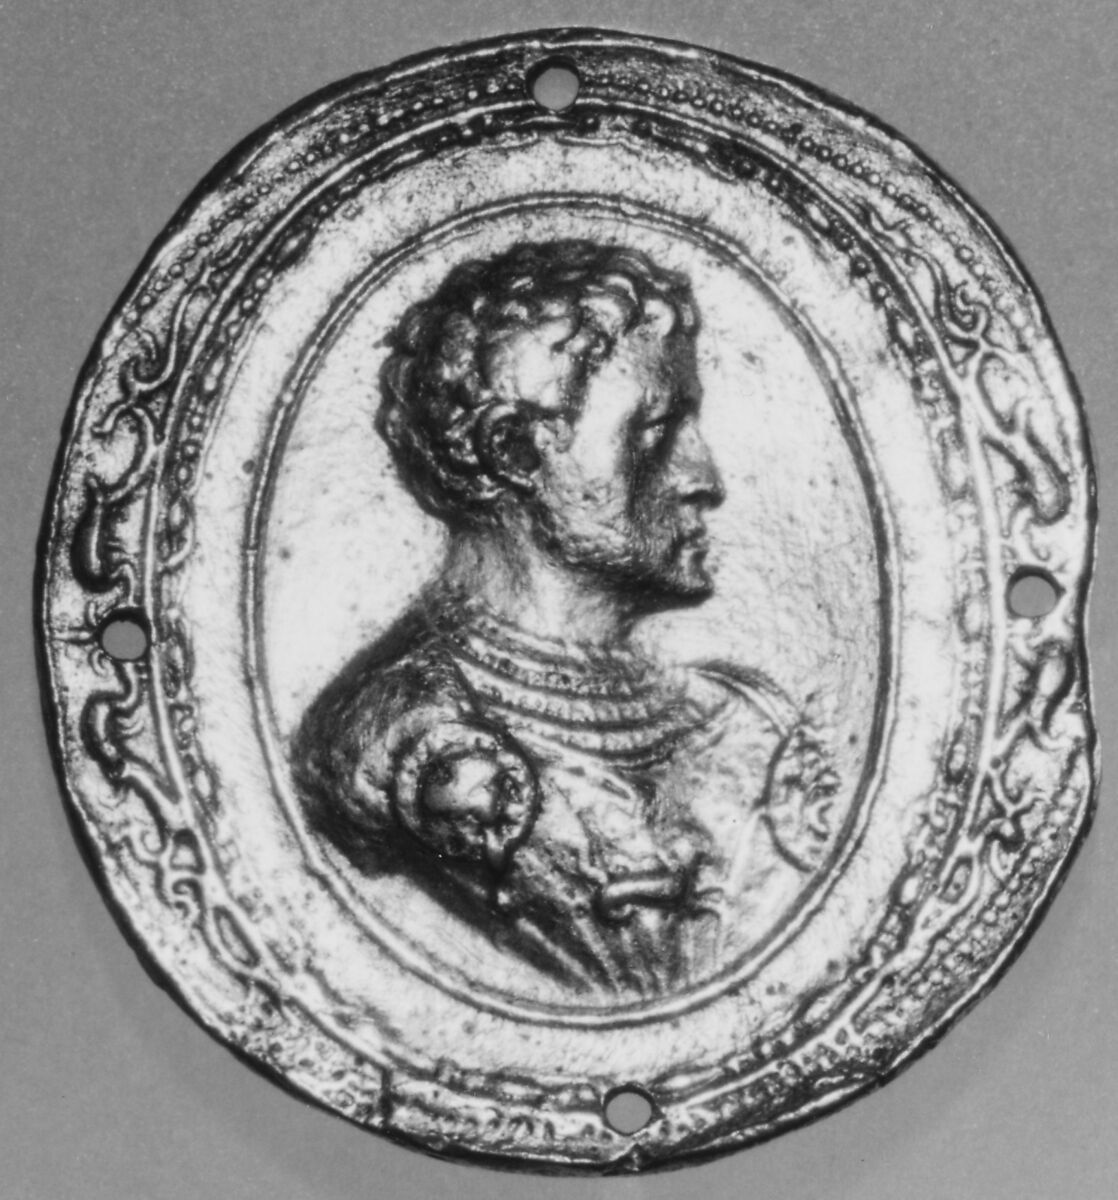 Cosimo I de' Medici, Gilt bronze, Italian, Florence 